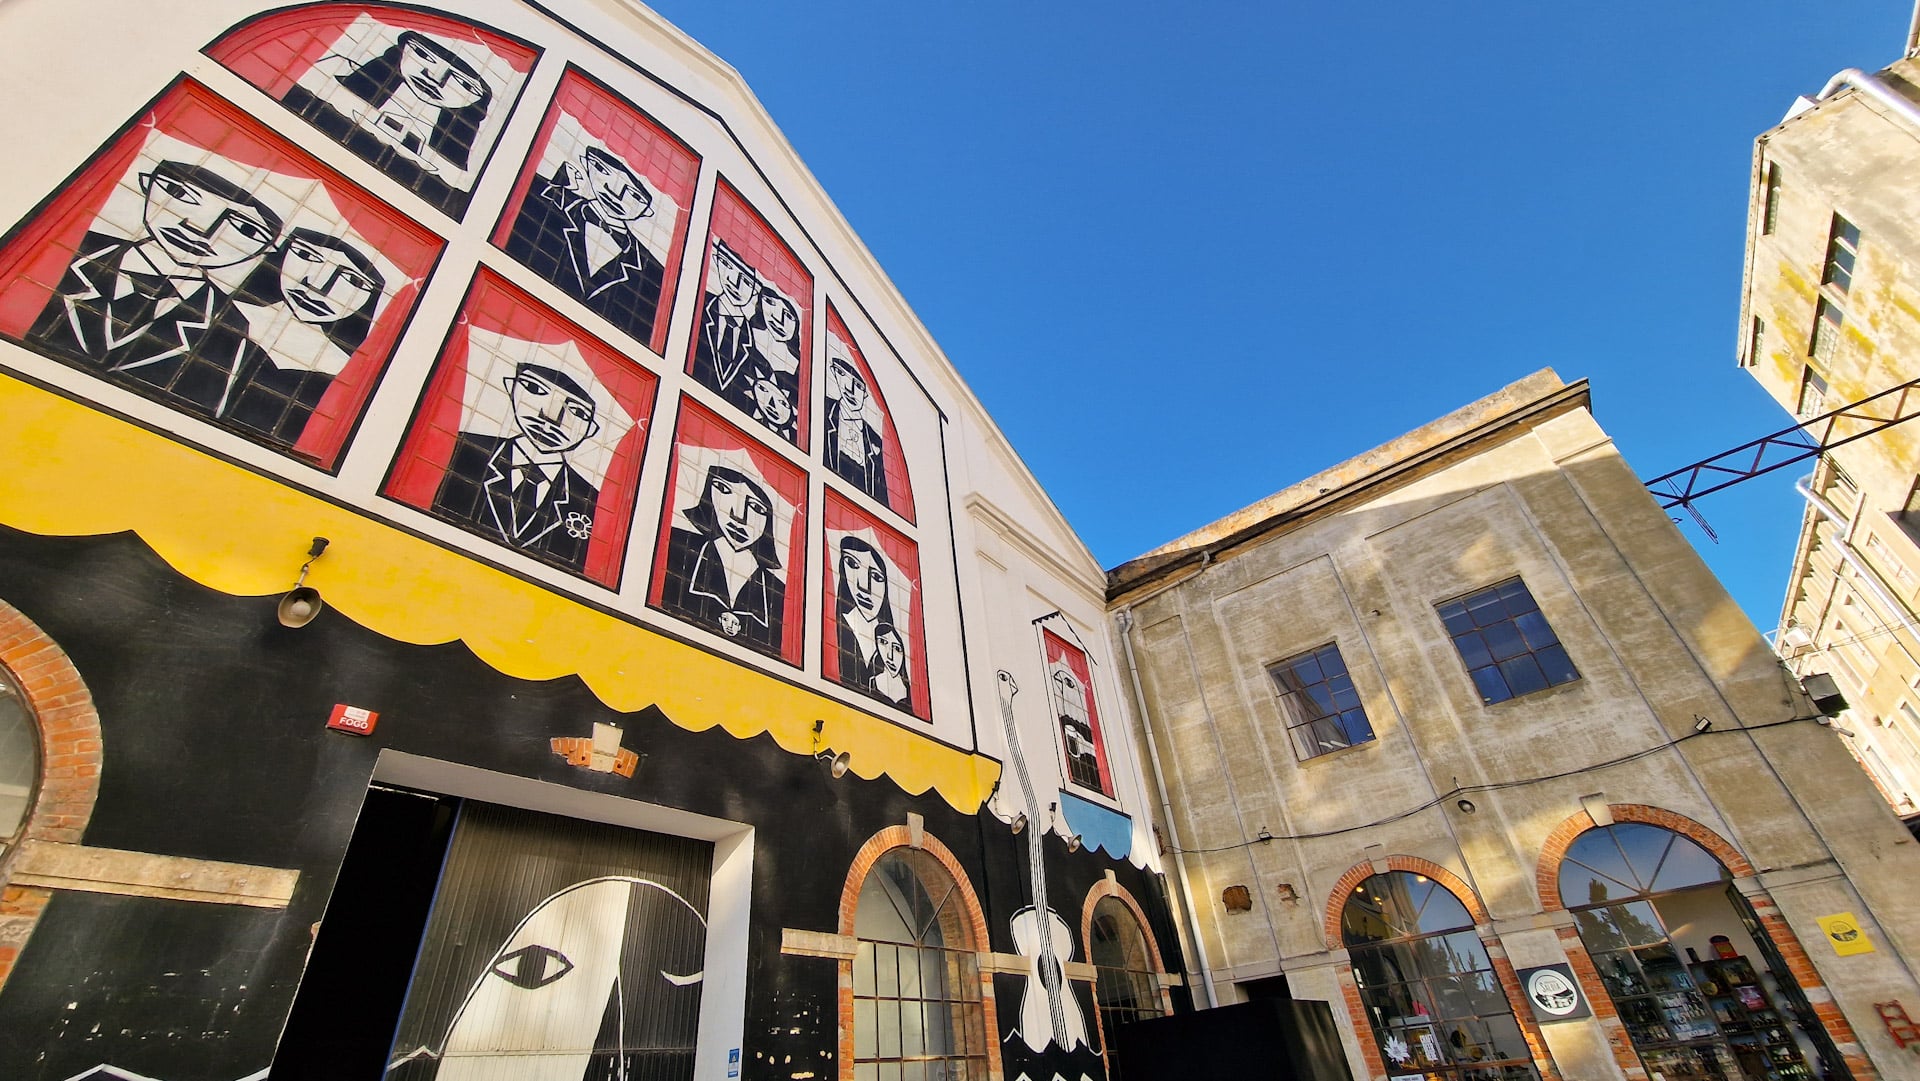 Alcântara è uno dei quartieri più trendy di Lisbona. È noto per le sue gallerie d'arte contemporanea, i ristoranti creativi e i bar alla moda.